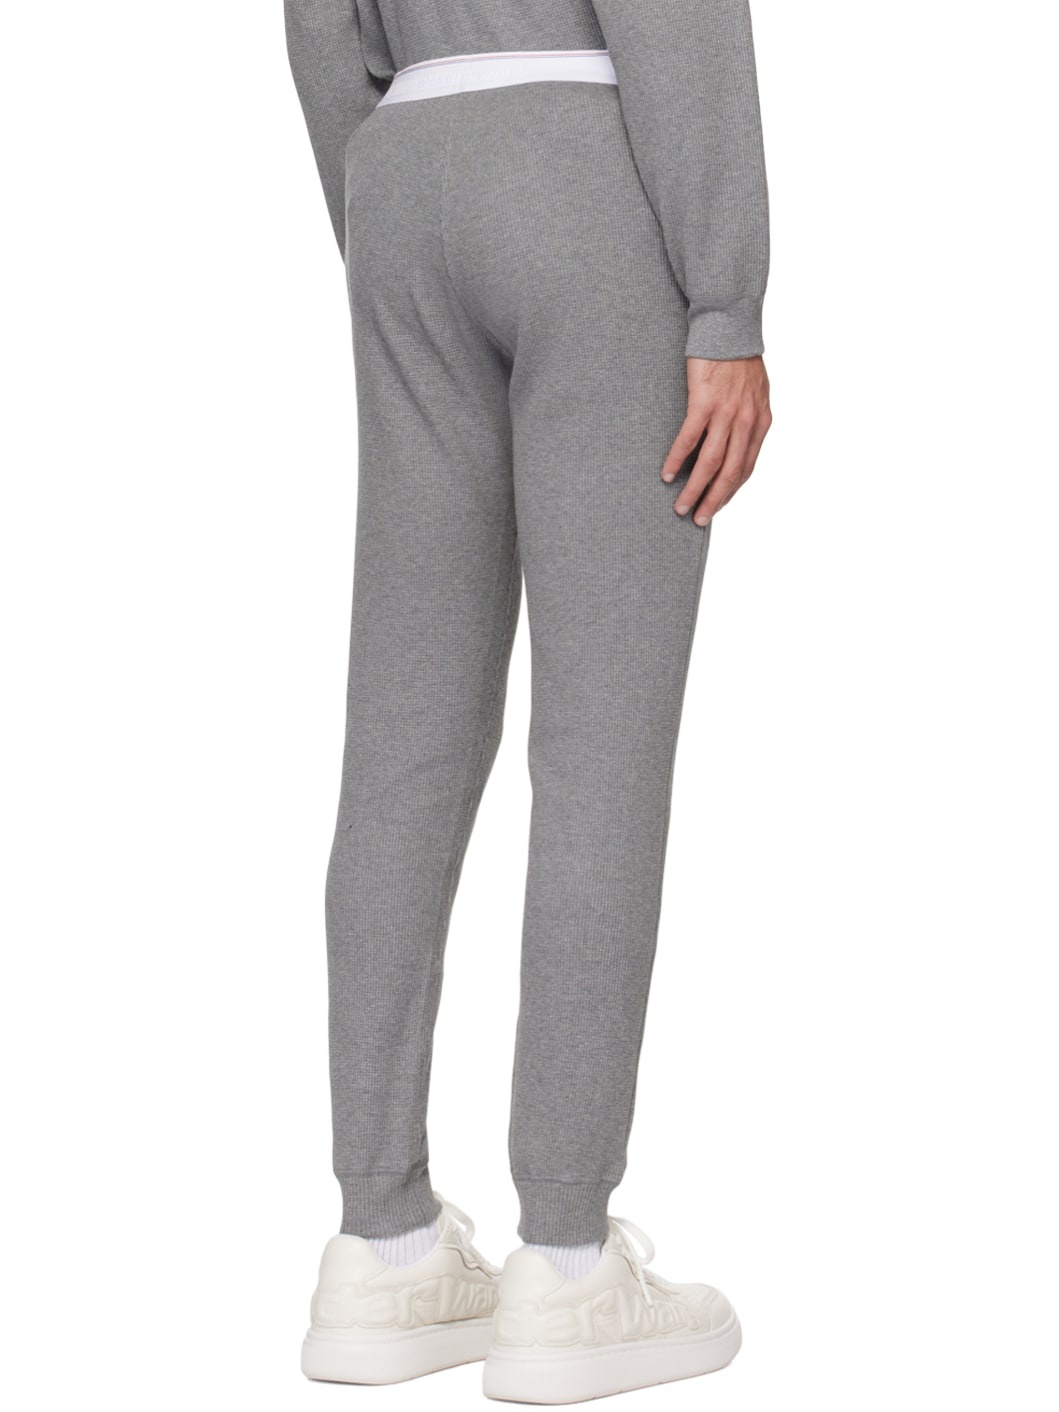 Gray Two-Pocket Sweatpants - 3